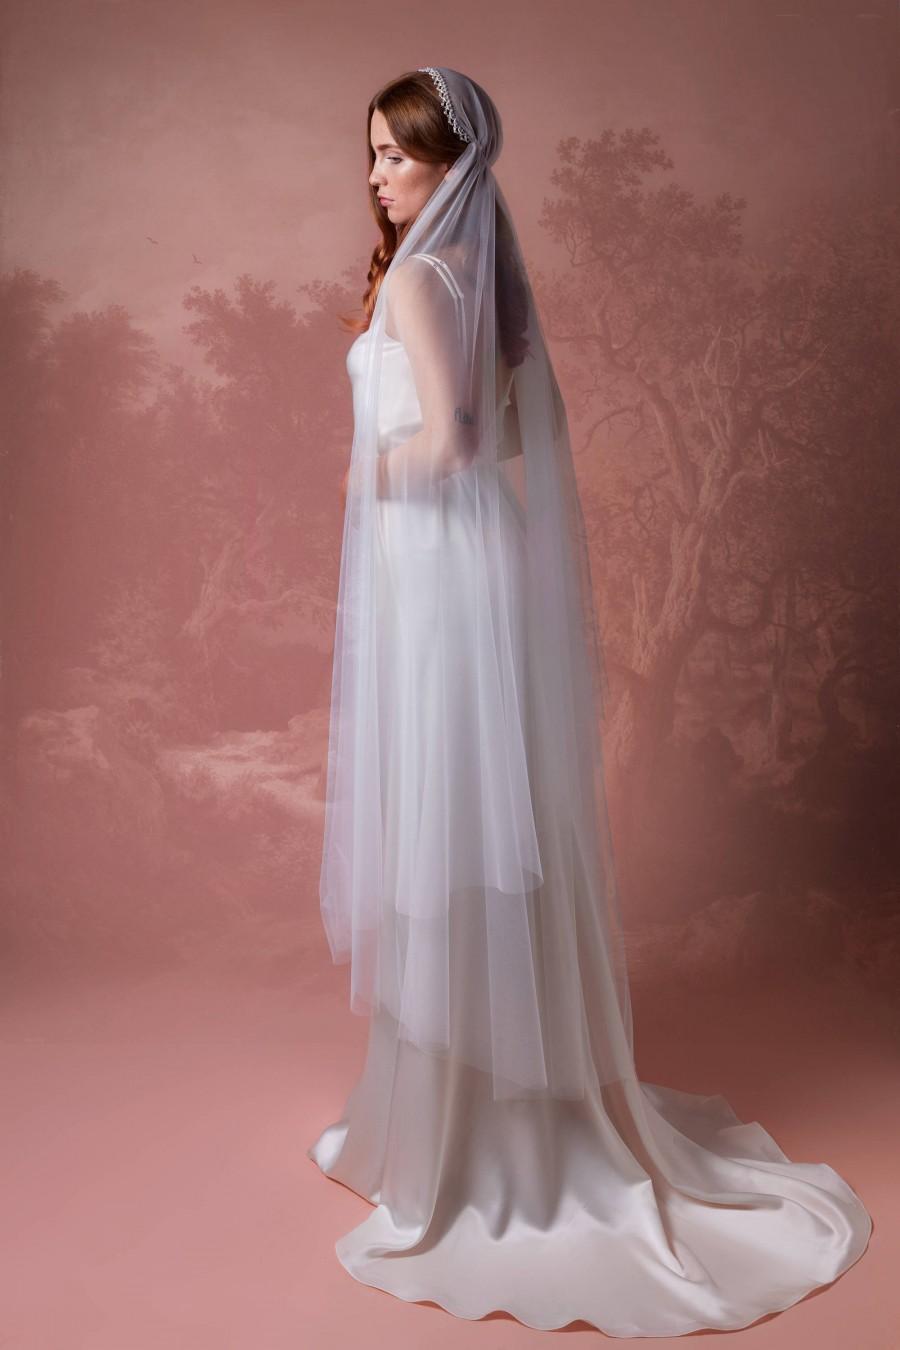 زفاف - Juliet Bridal Cap Veil with Blusher A5, Bridal Veil, Crystal Edge Veil, Vintage Veil, Waltz, Chapel, Cathedral Veil, Boho Veil